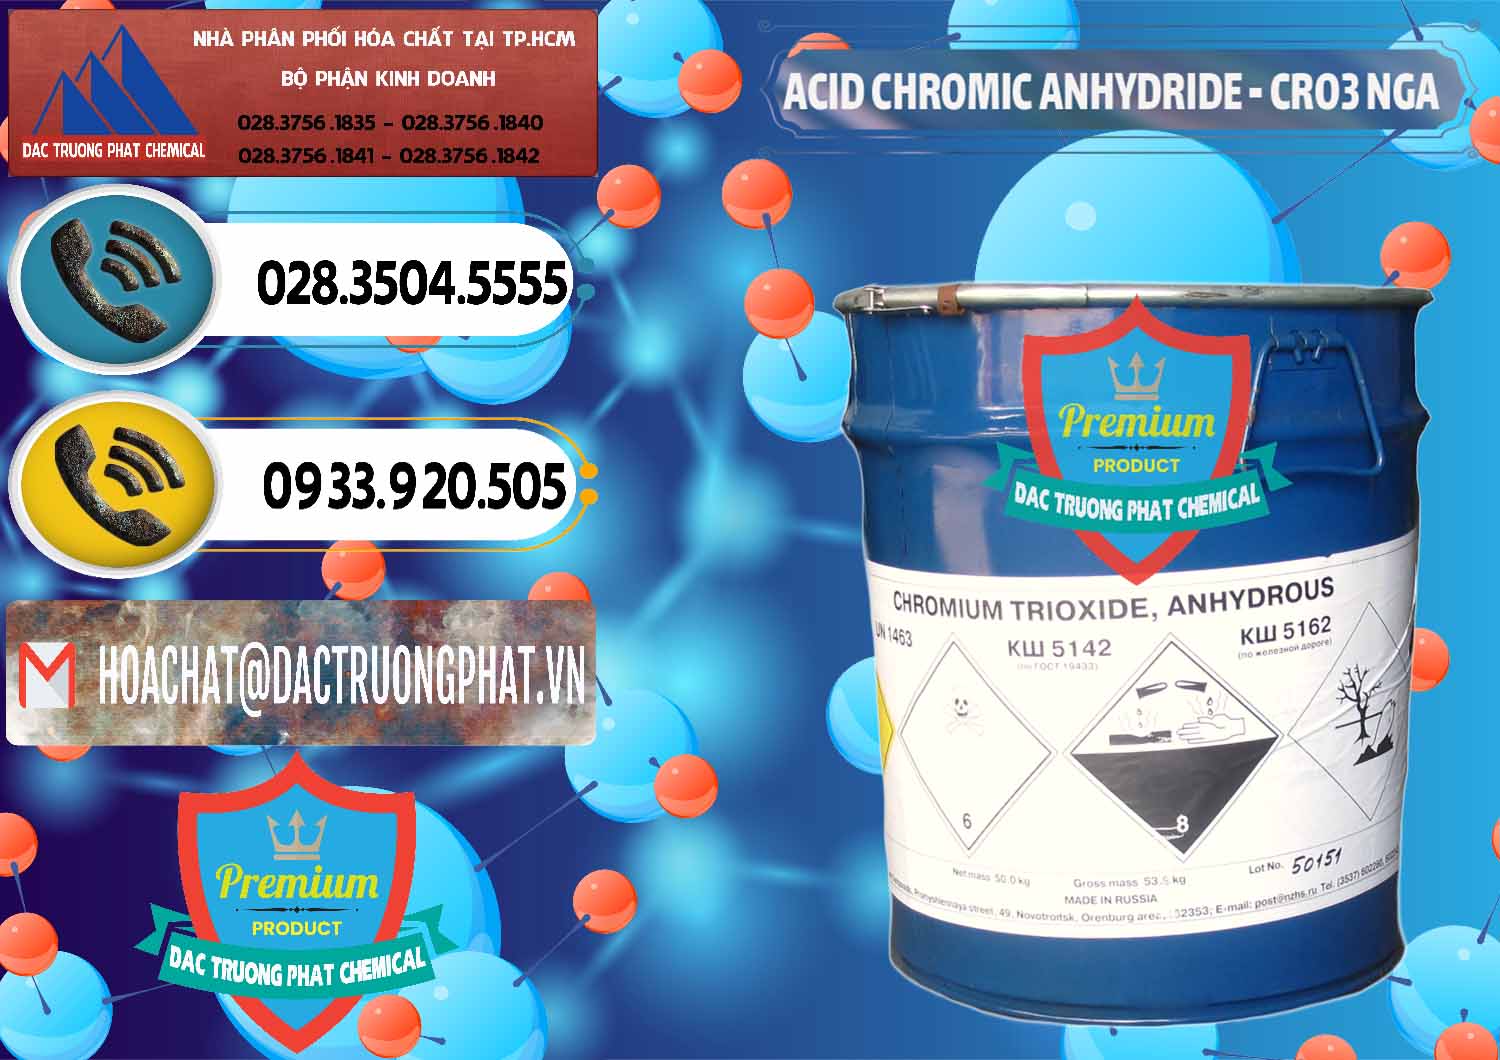 Nhà phân phối và bán Acid Chromic Anhydride - Cromic CRO3 Nga Russia - 0006 - Cty cung cấp và nhập khẩu hóa chất tại TP.HCM - hoachatdetnhuom.vn